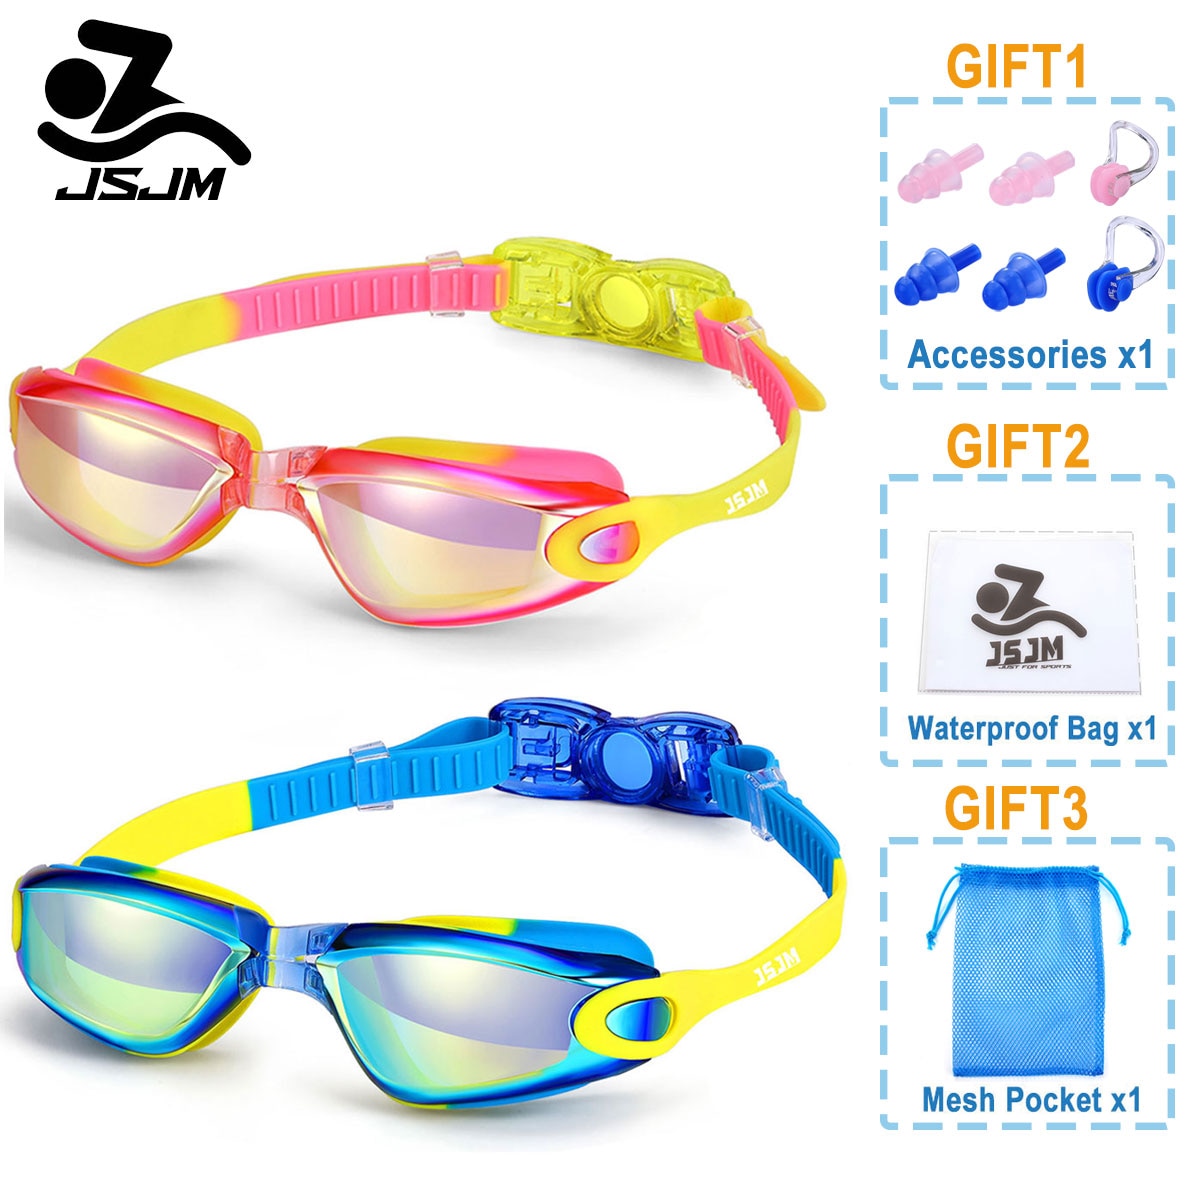 Jsjm profissional colorido crianças silicone natação óculos anti nevoeiro uv natação óculos de silicone à prova dwaterproof água nadar eyewear crianças